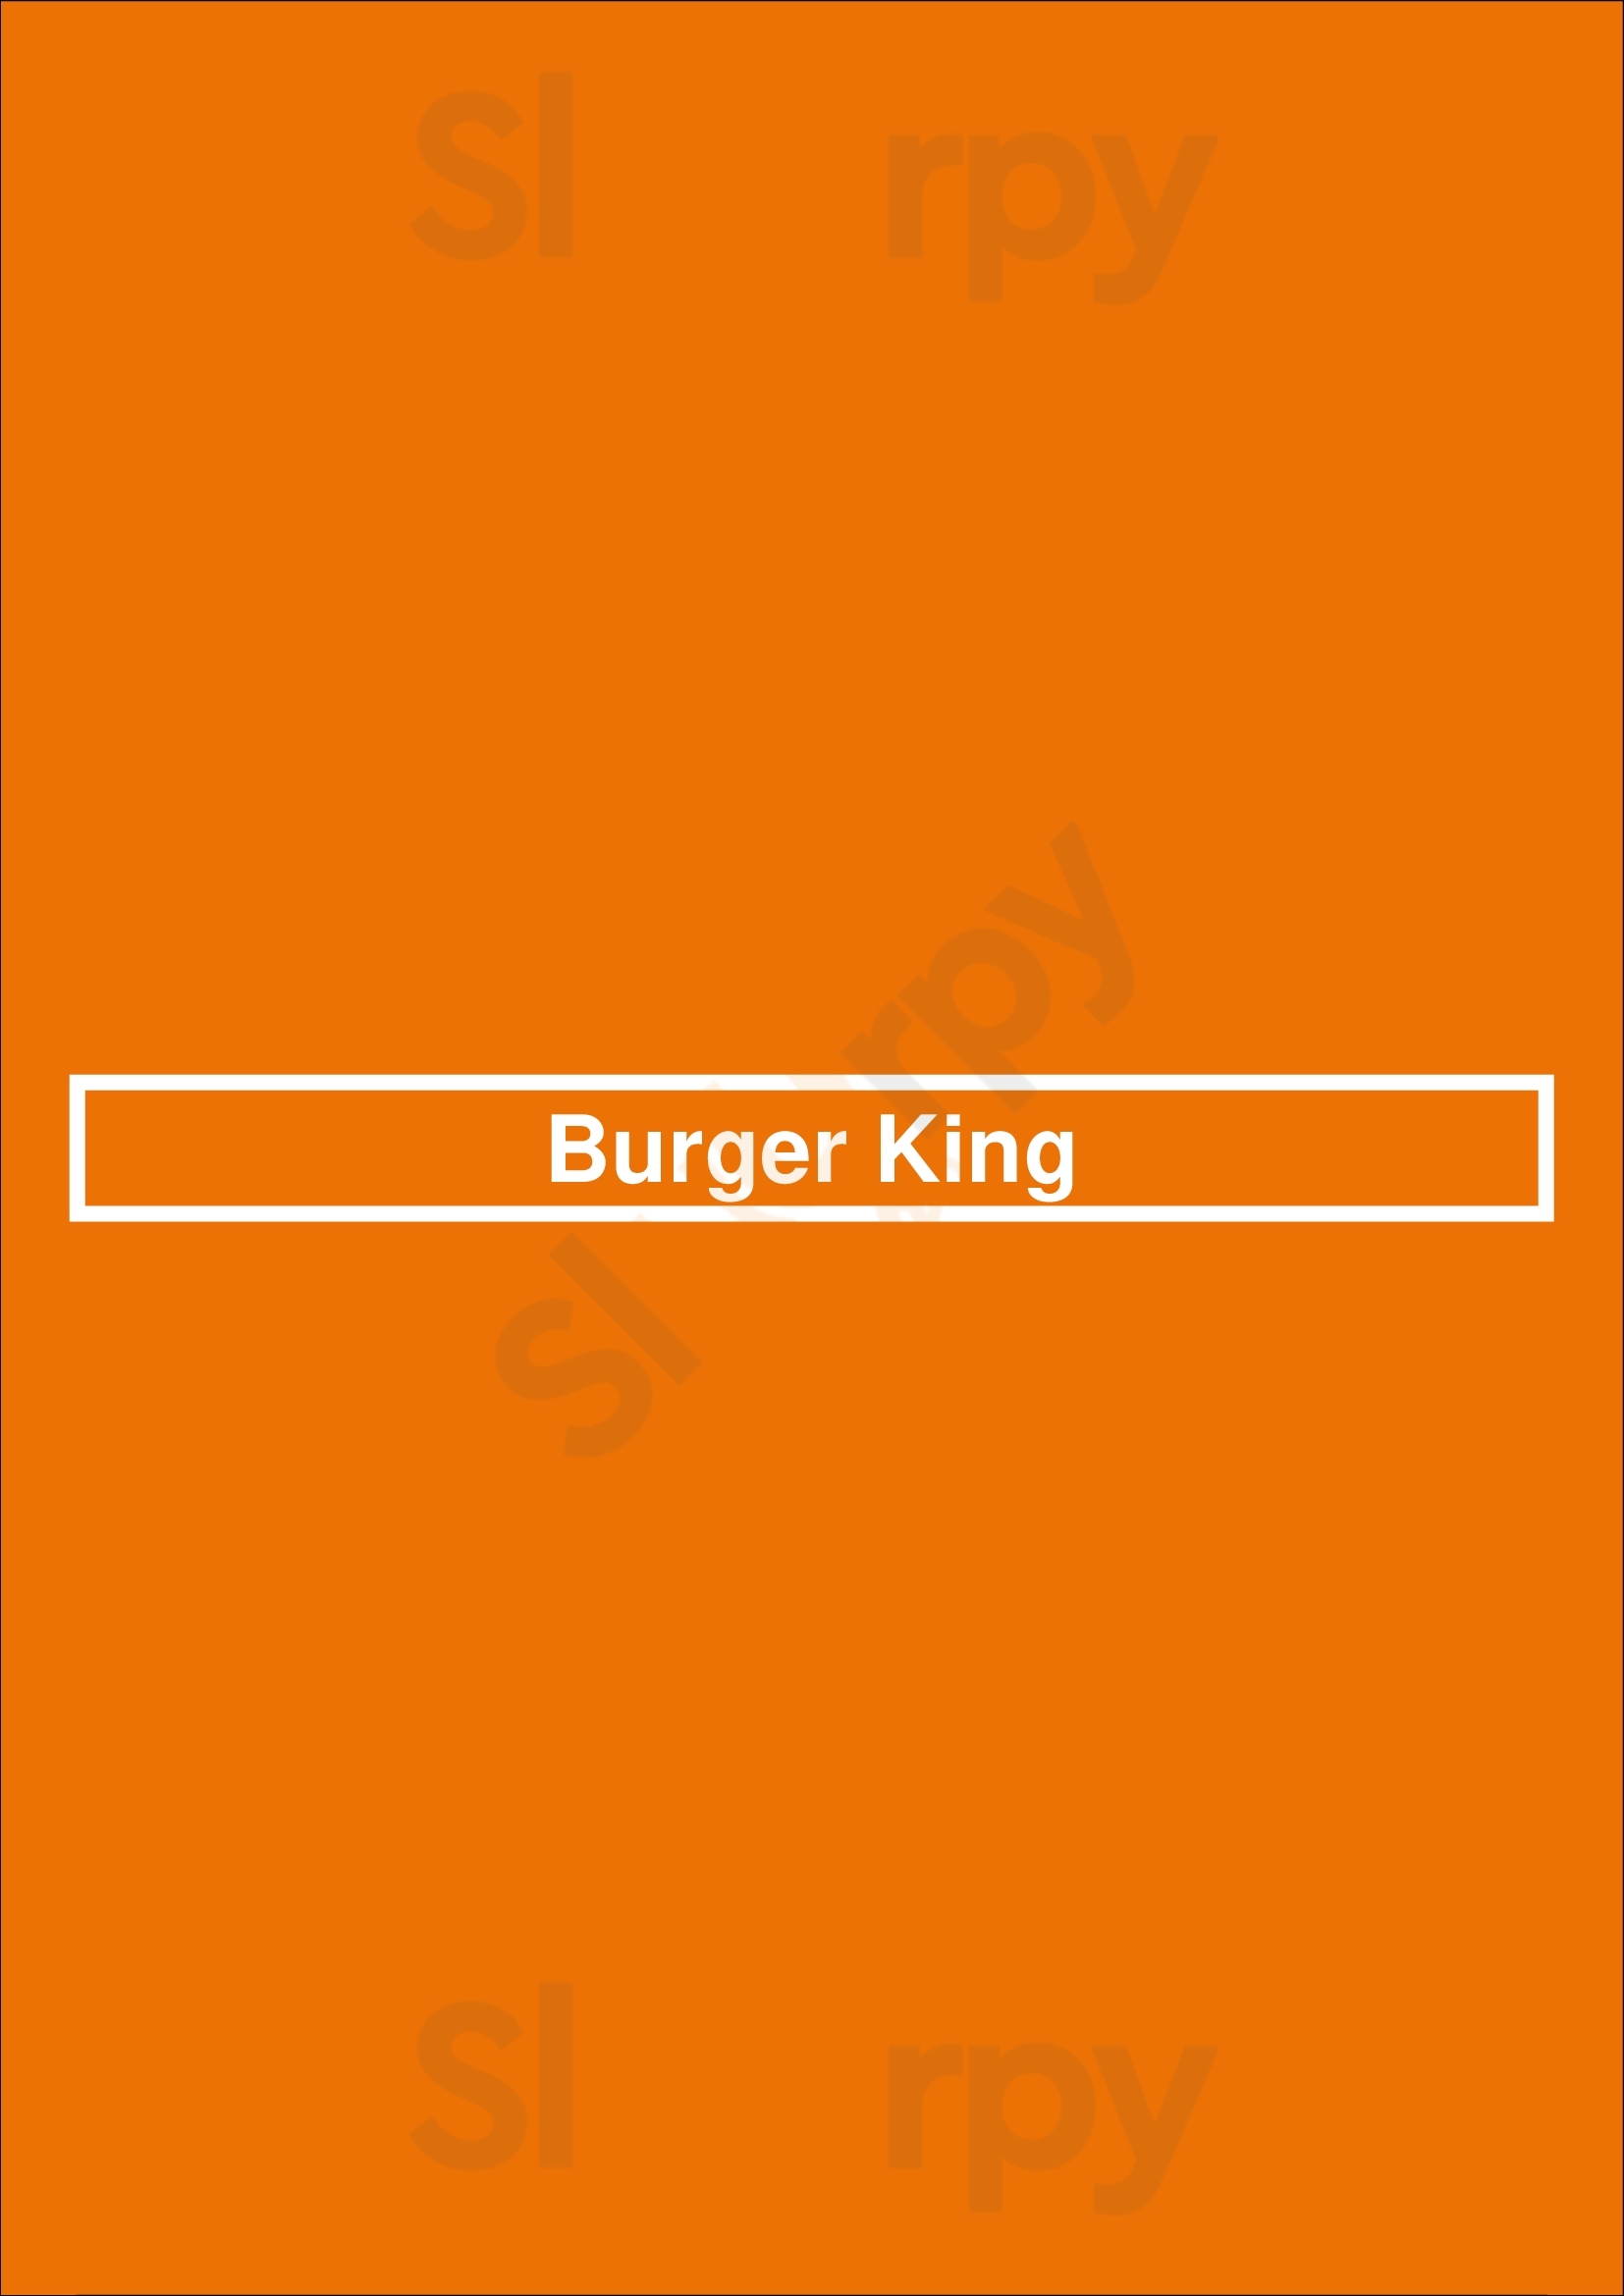 Burger King Fresno Menu - 1